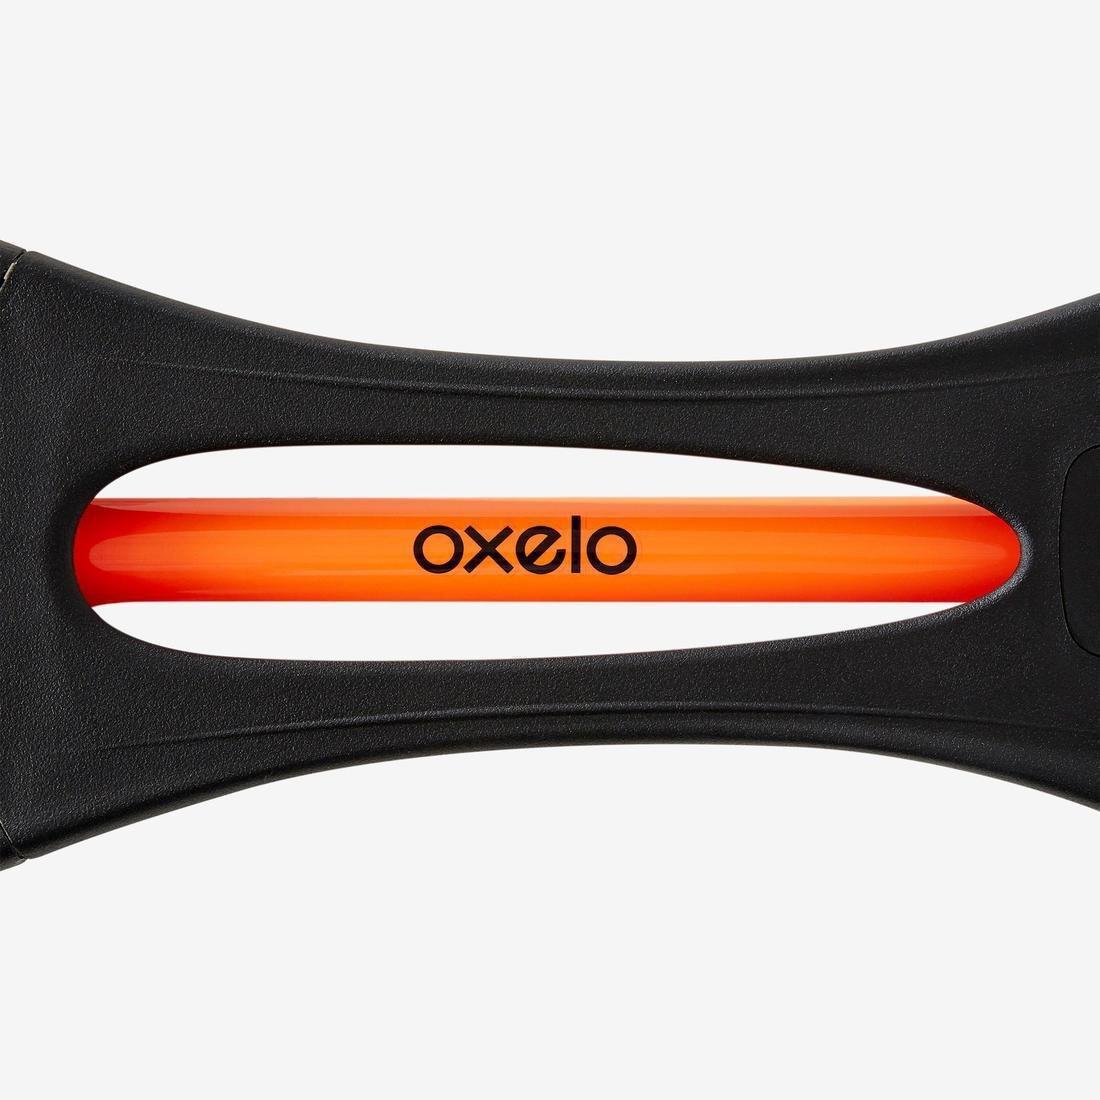 OXELO - Oxeloboard Beginner Waveboard, Black